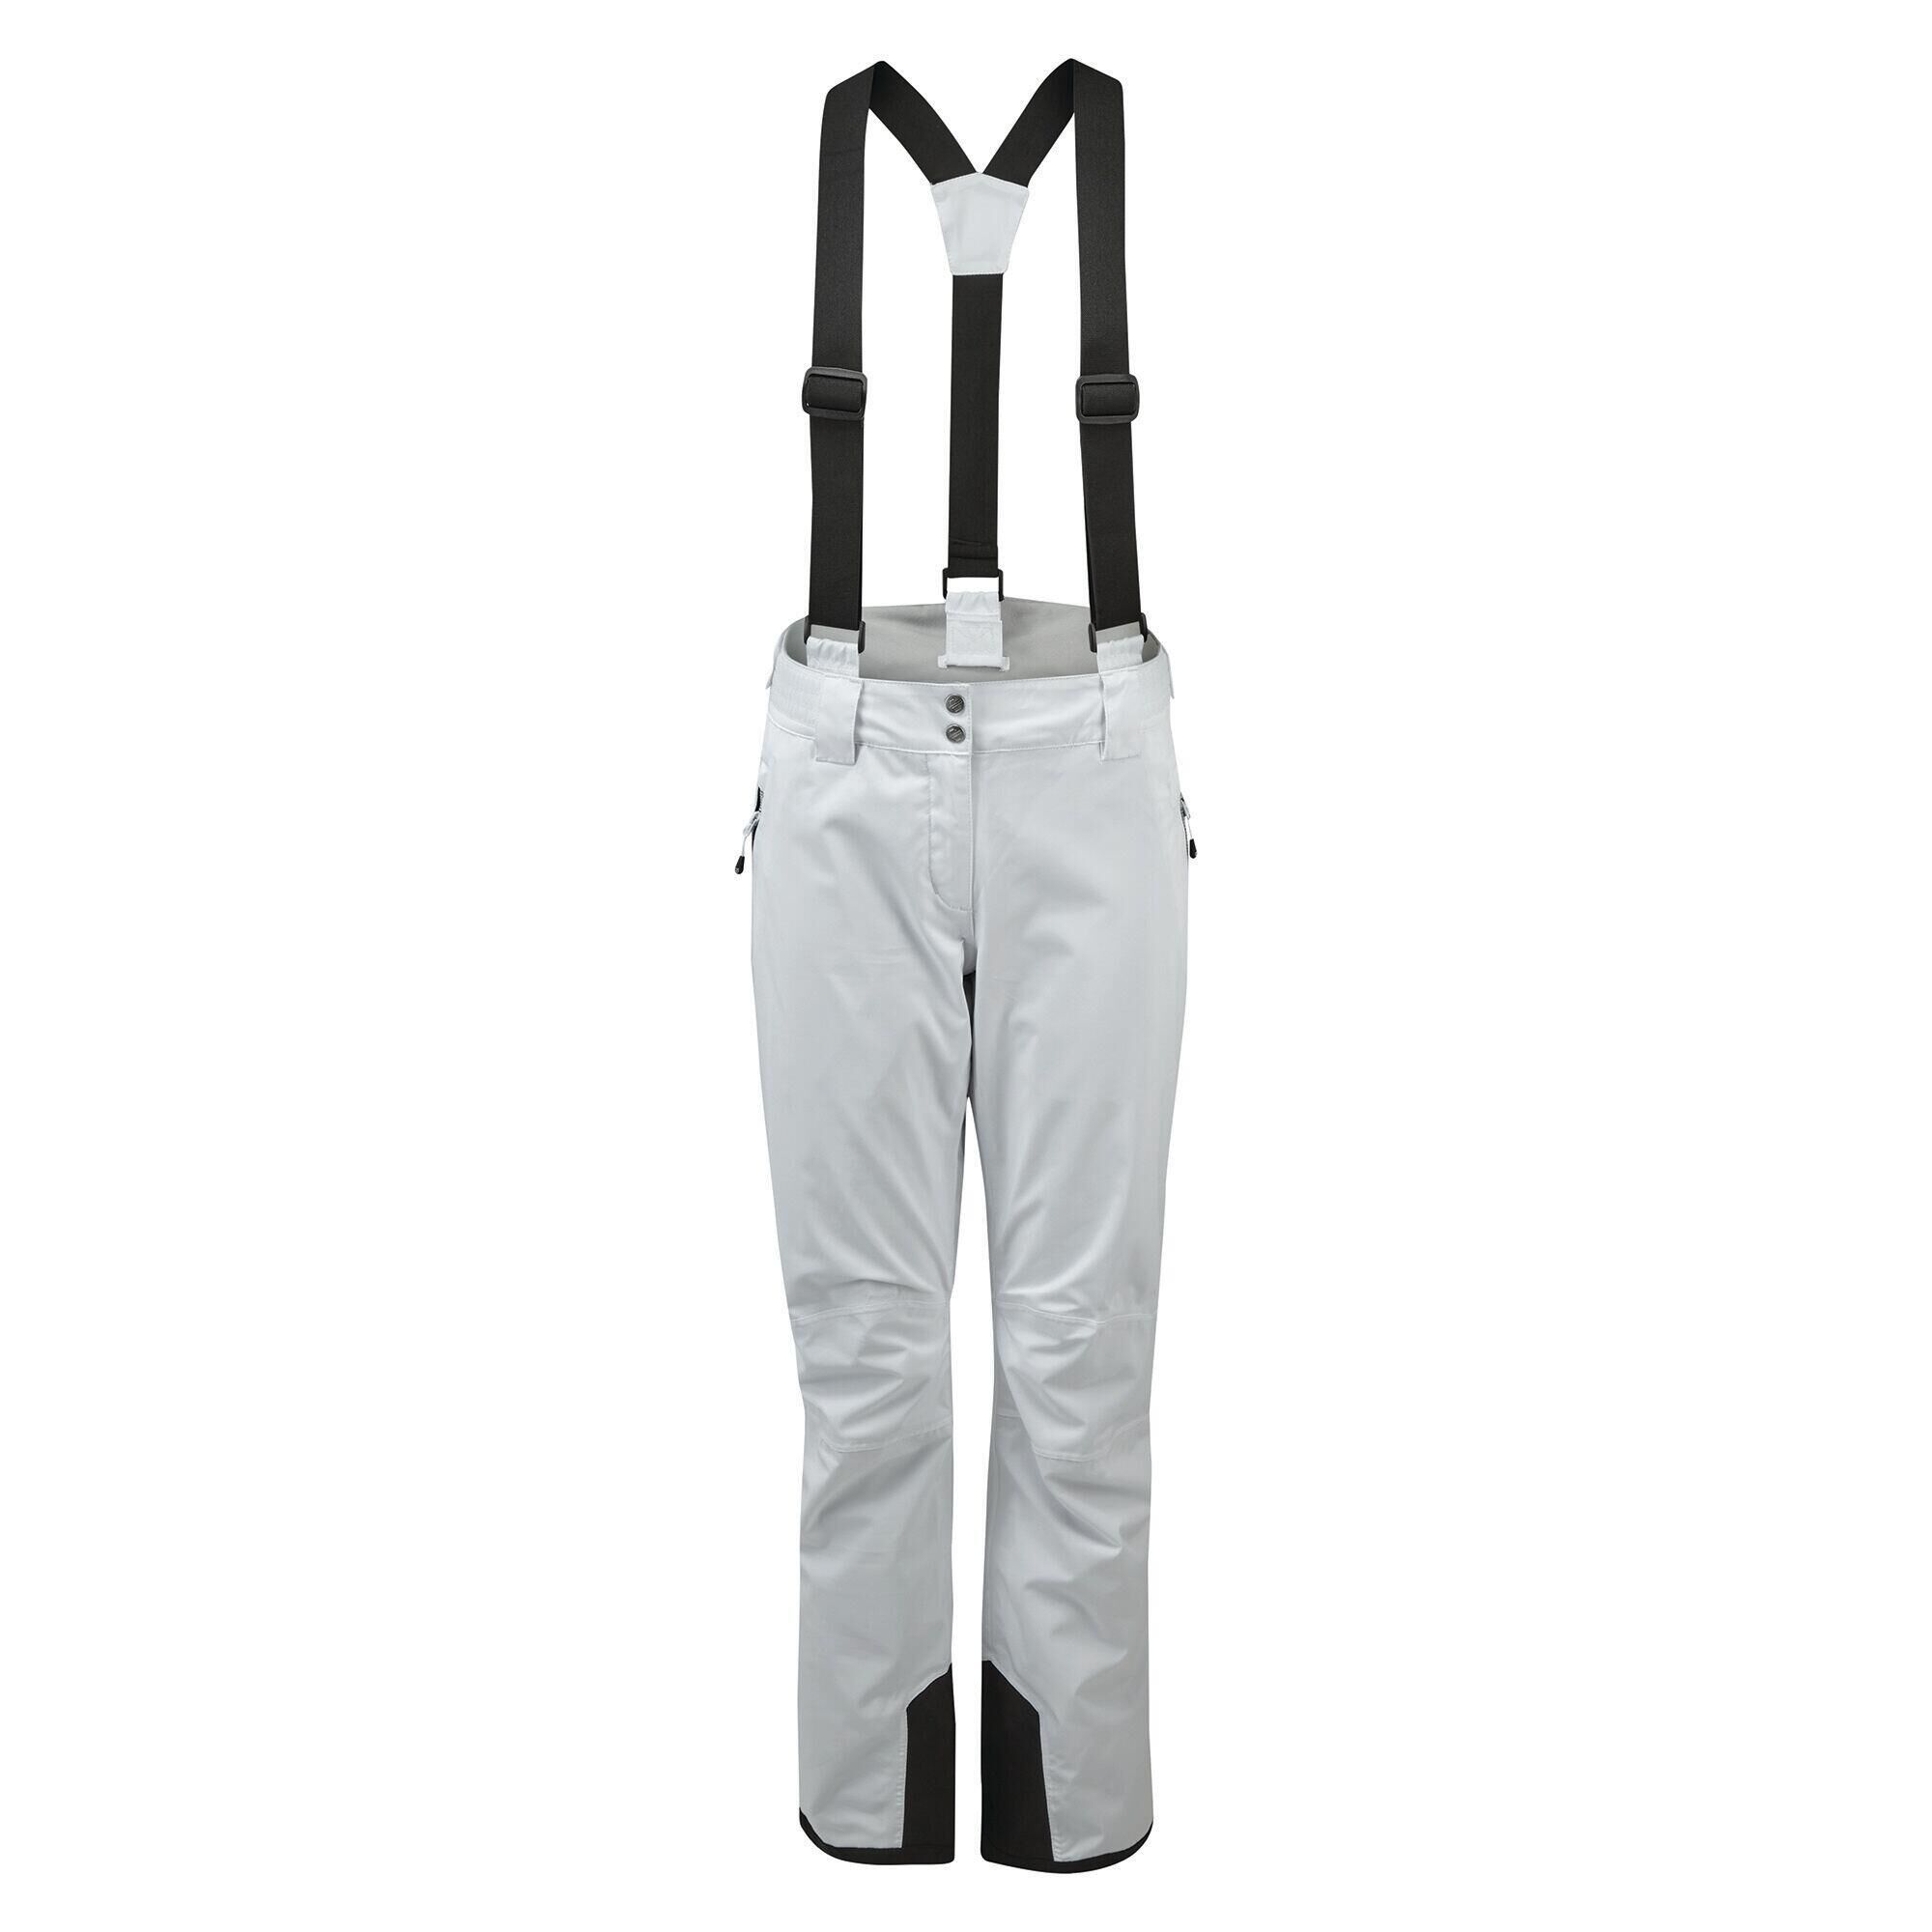 DARE 2B Womens/Ladies Diminish Insulated Ski Trousers (White)